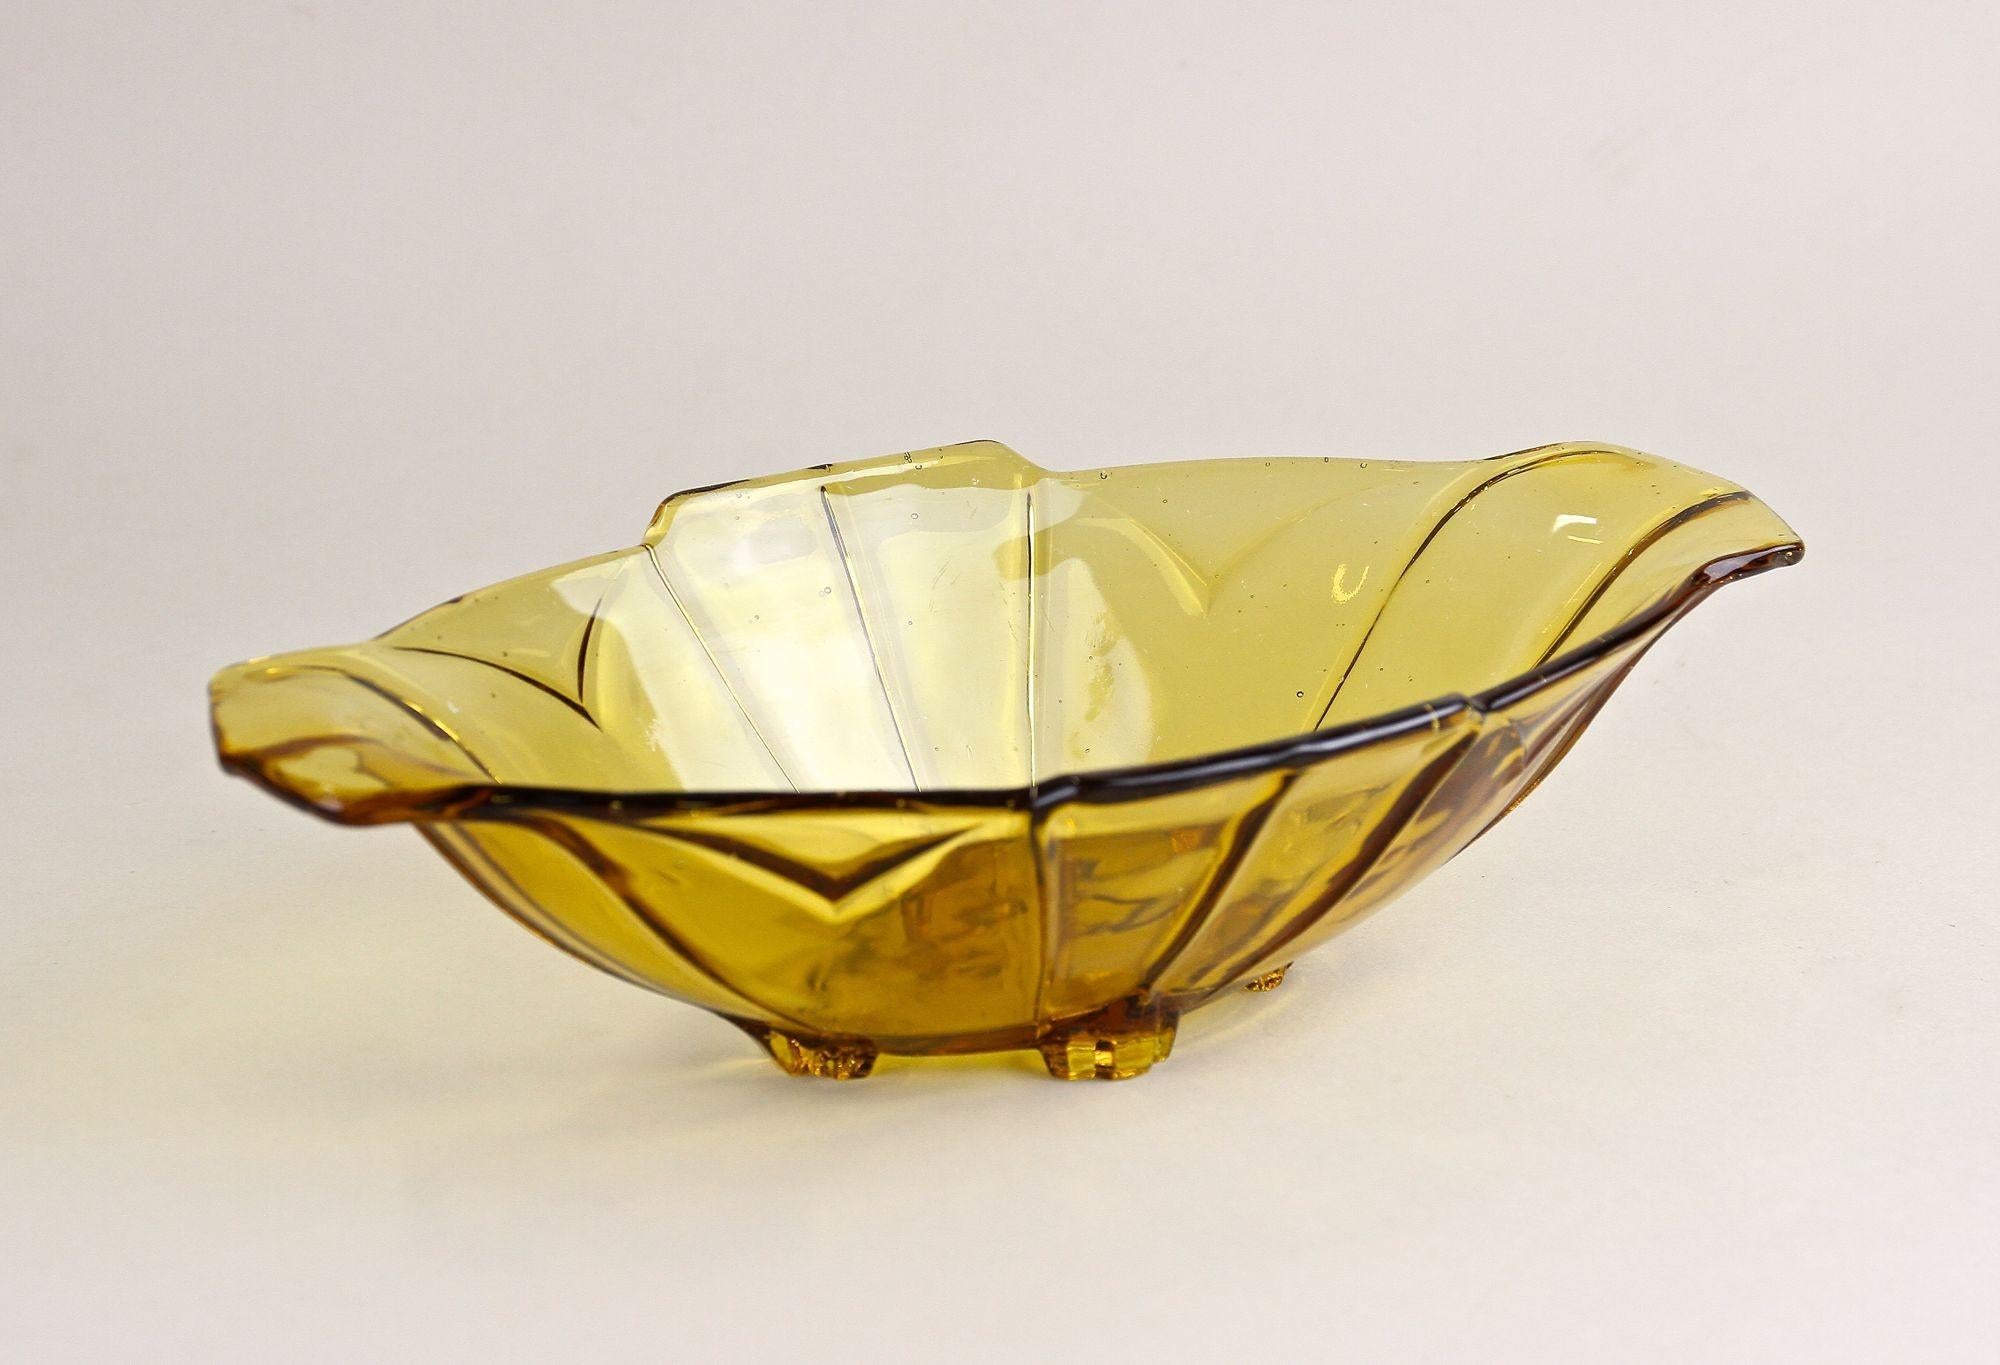 Jolie jardinière ou bol en verre Art Déco de couleur ambre datant d'environ 1920 en Autriche. Présentant une fantastique teinte jaune/brun, cet objet en verre très décoratif impressionne par sa belle forme ornée d'éléments de design uniques. Le